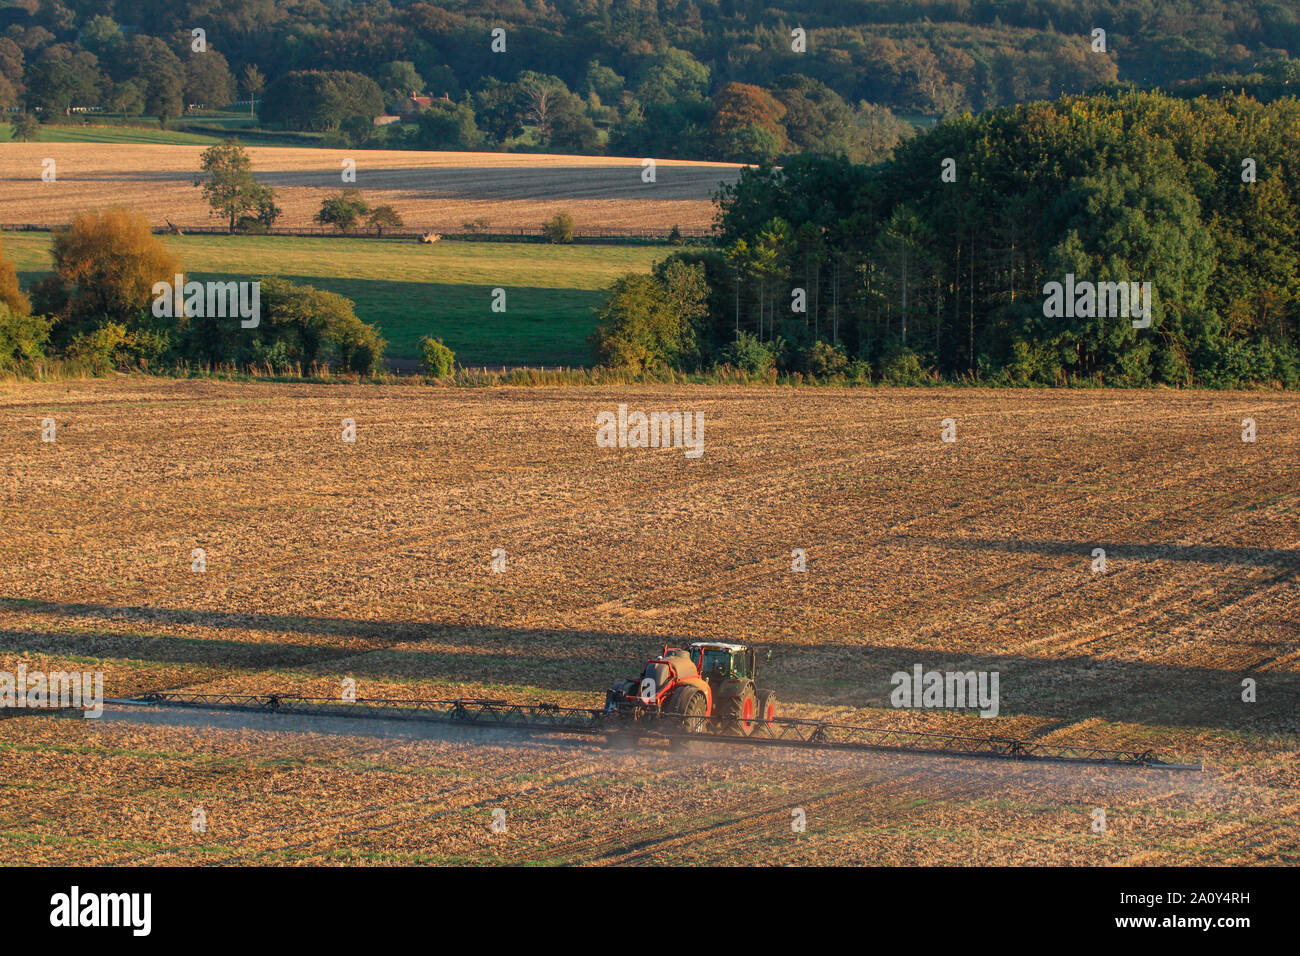 Véhicule agricole, la pulvérisation d'engrais sur les terres agricoles dans la région de North Yorkshire au Royaume-Uni. Banque D'Images